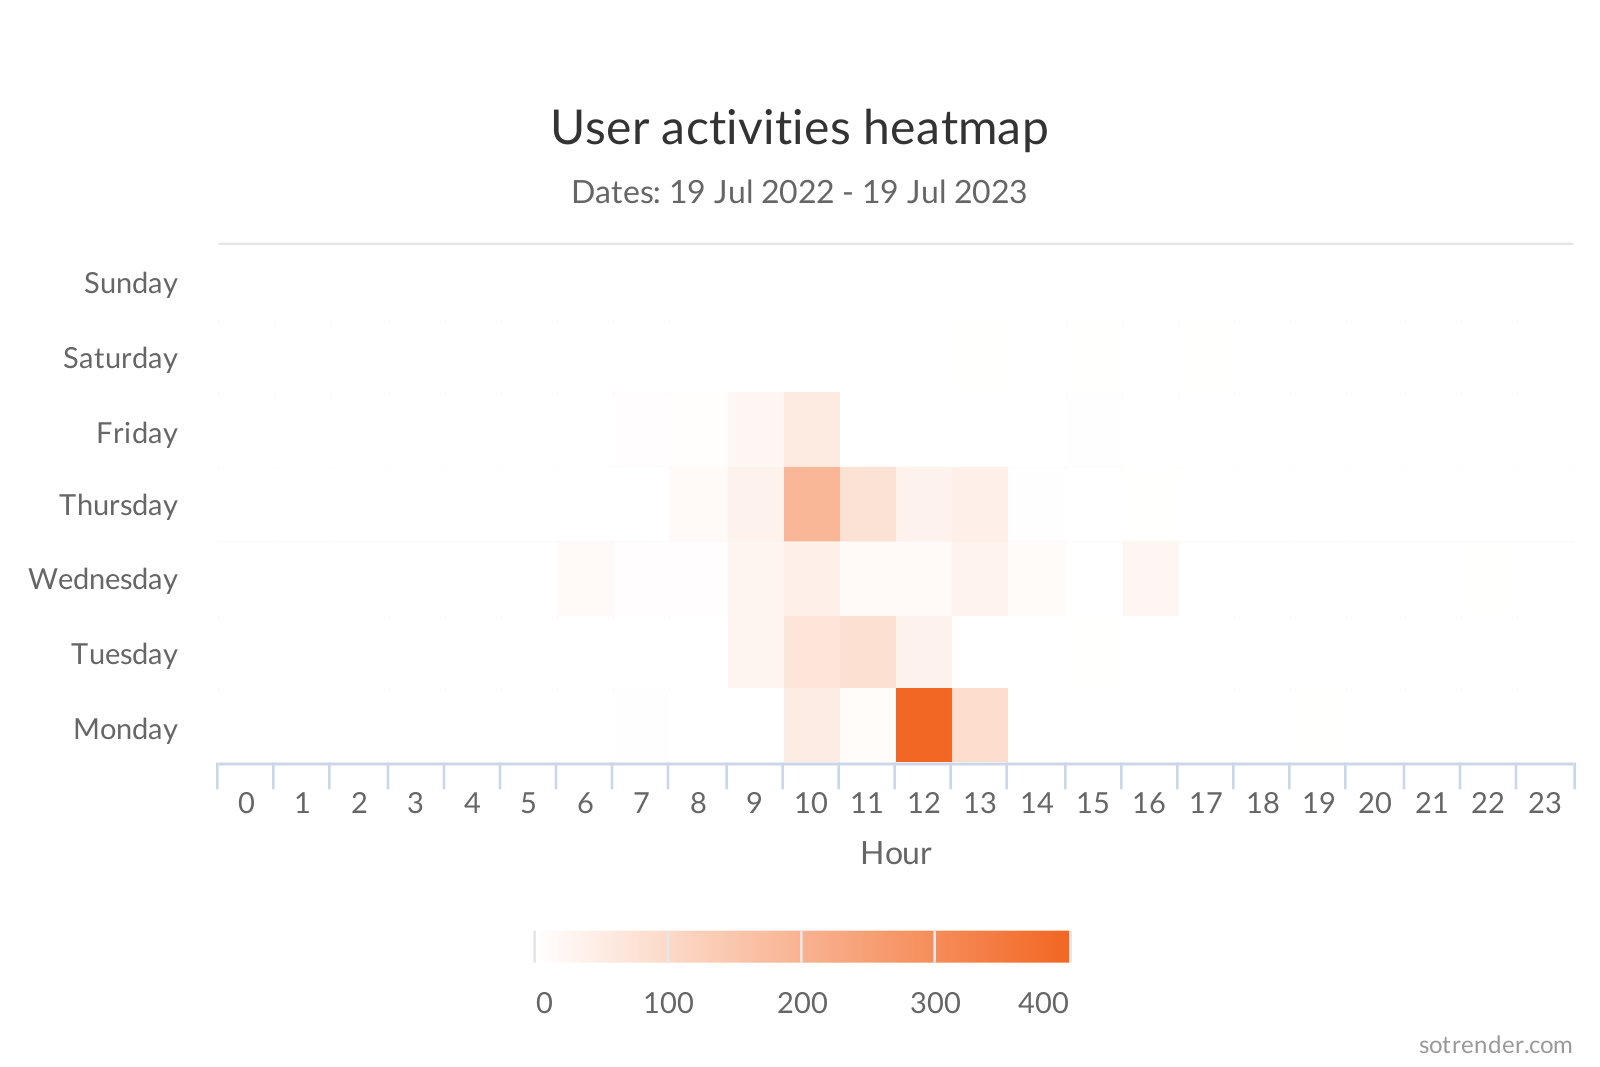 user activities heatmap sotrender